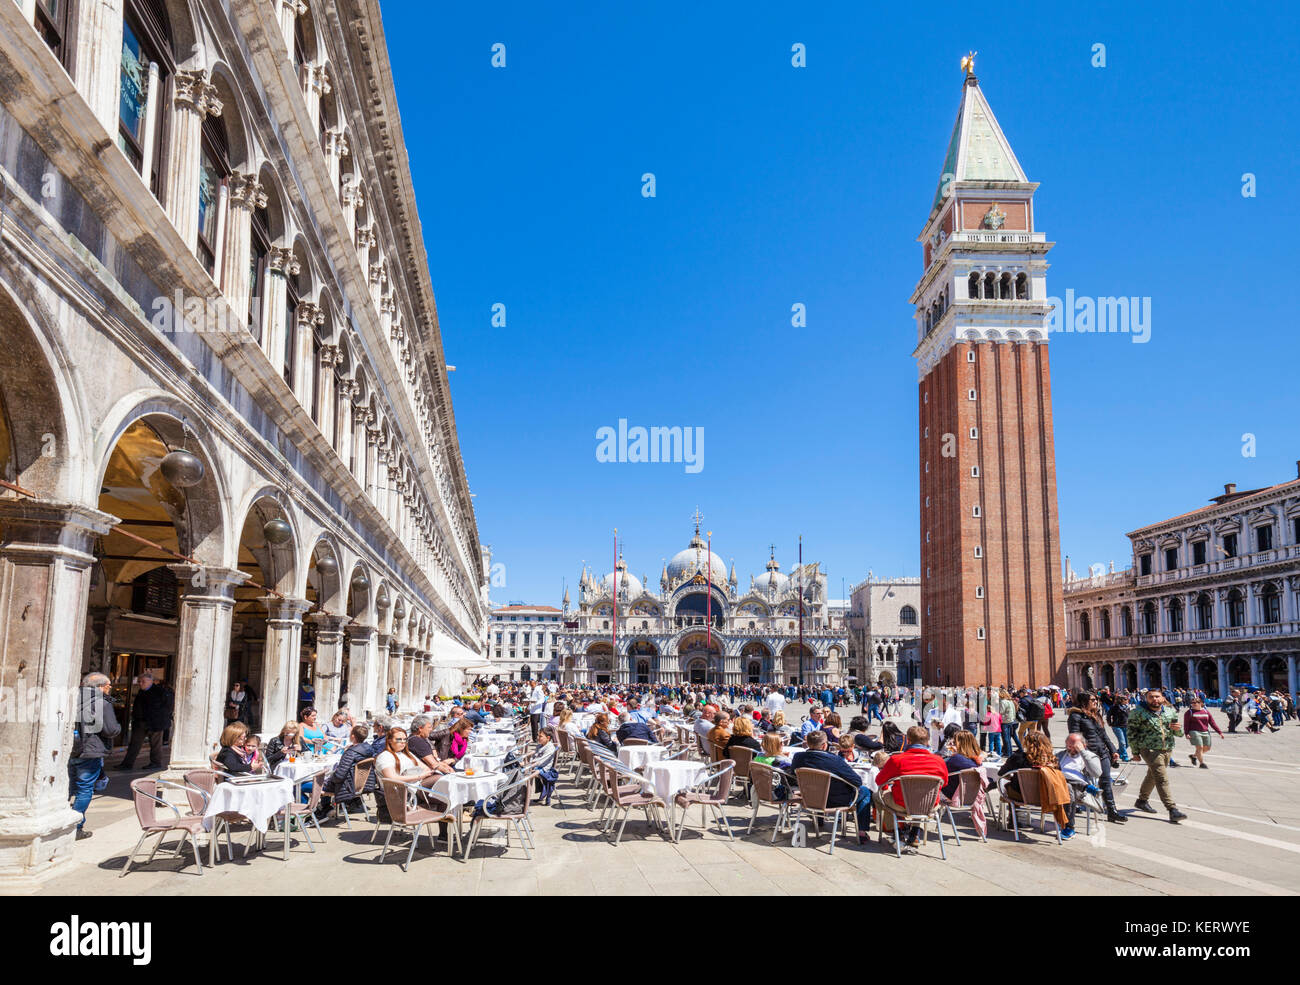 Venecia Italia Venecia cafés en la Plaza de San Marcos, la Plaza de San Marcos en frente de la basílica y el Campanile di San Marco, la Basílica de San Marcos Venecia Italia Foto de stock